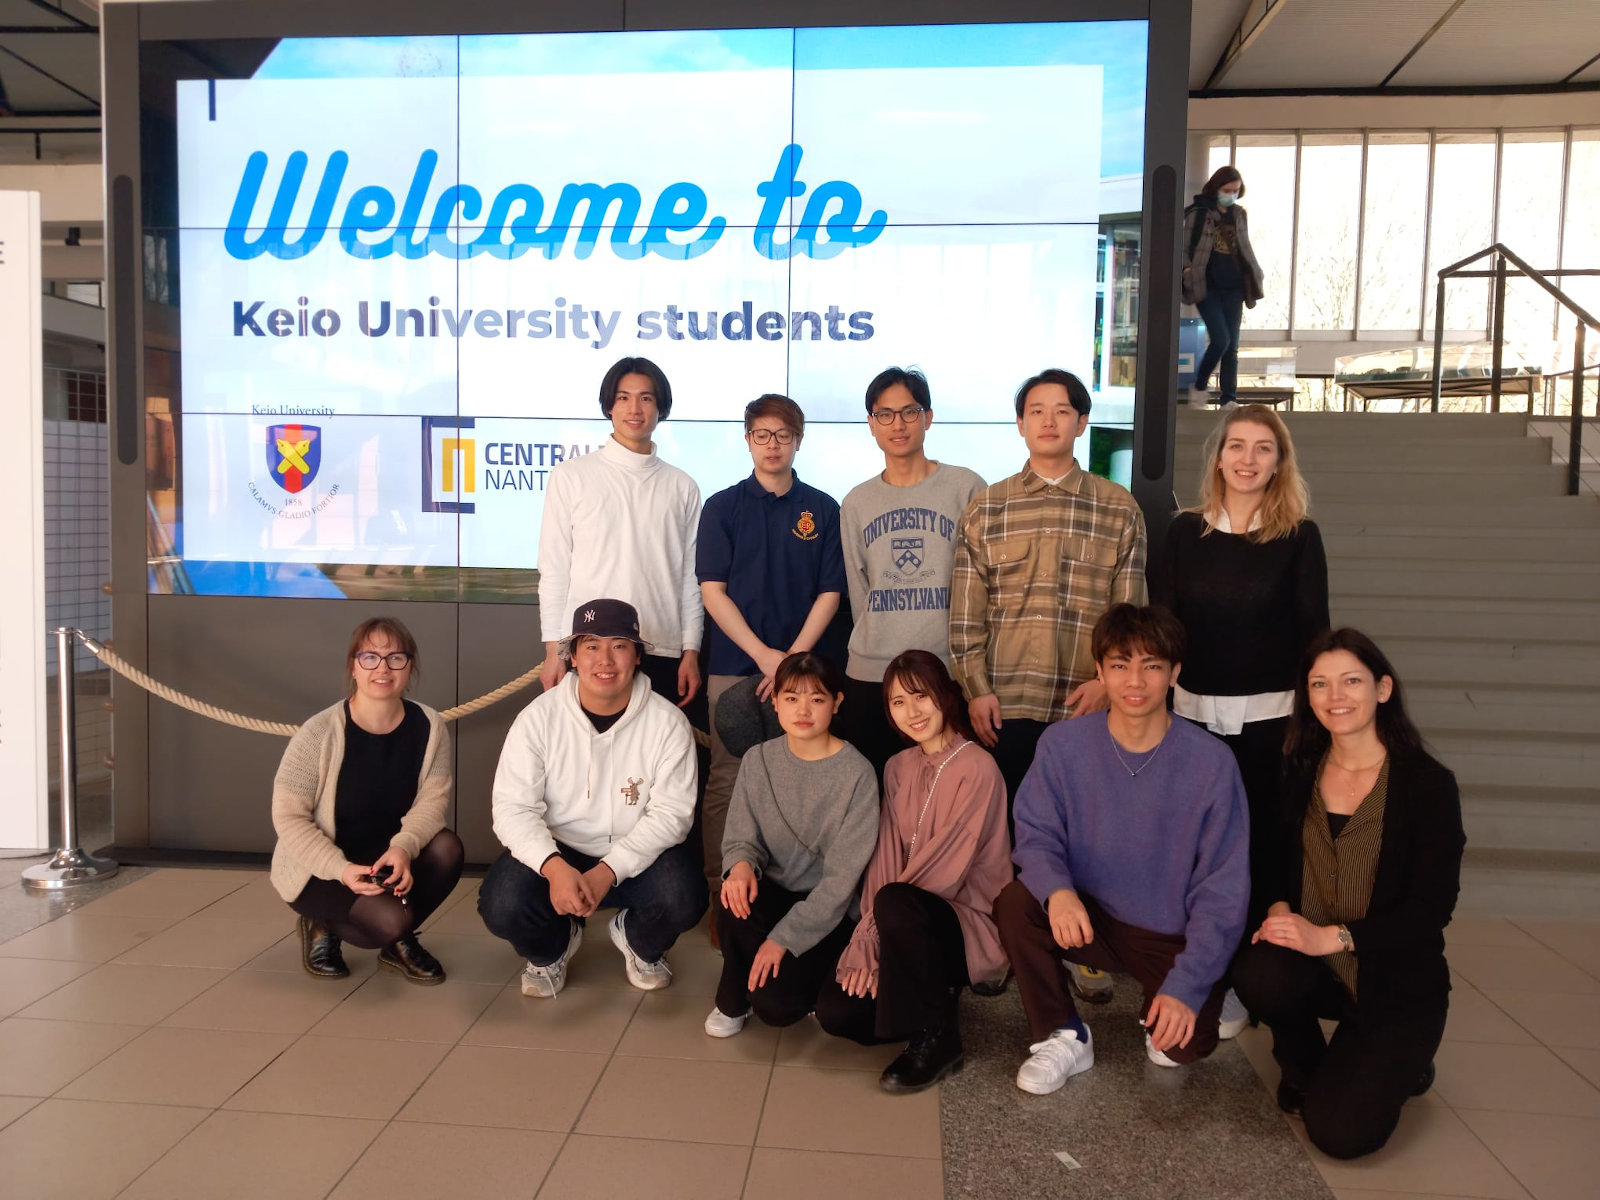 Les étudiants de l'université de Keio accueillis par la direction des relations internationales de Centrale Nantes